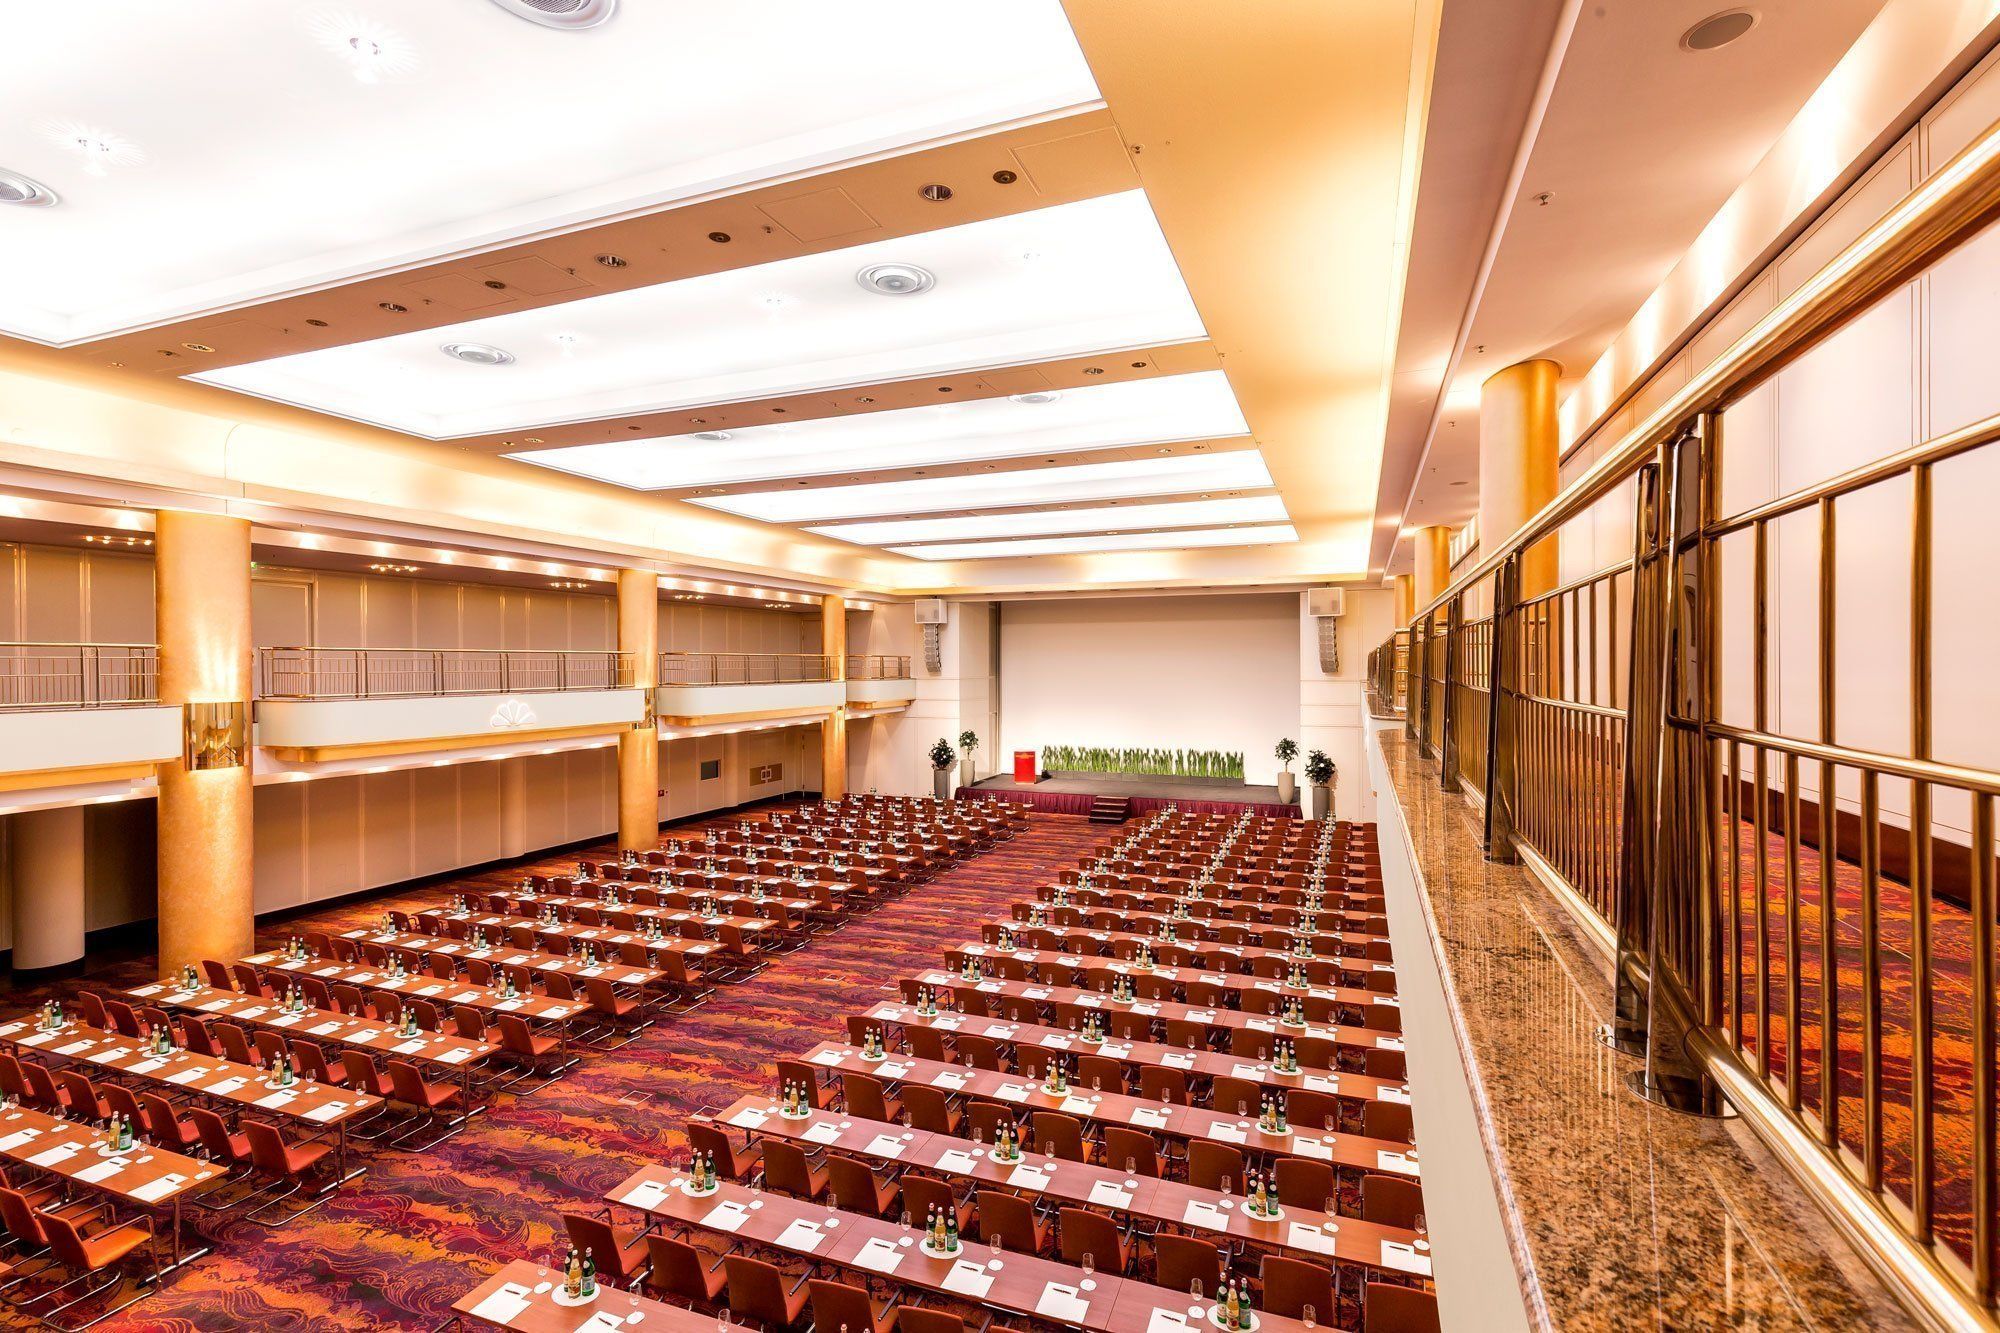 Rießiger Konferenzsaal mit Leinwand und Bühne für einen Speaker